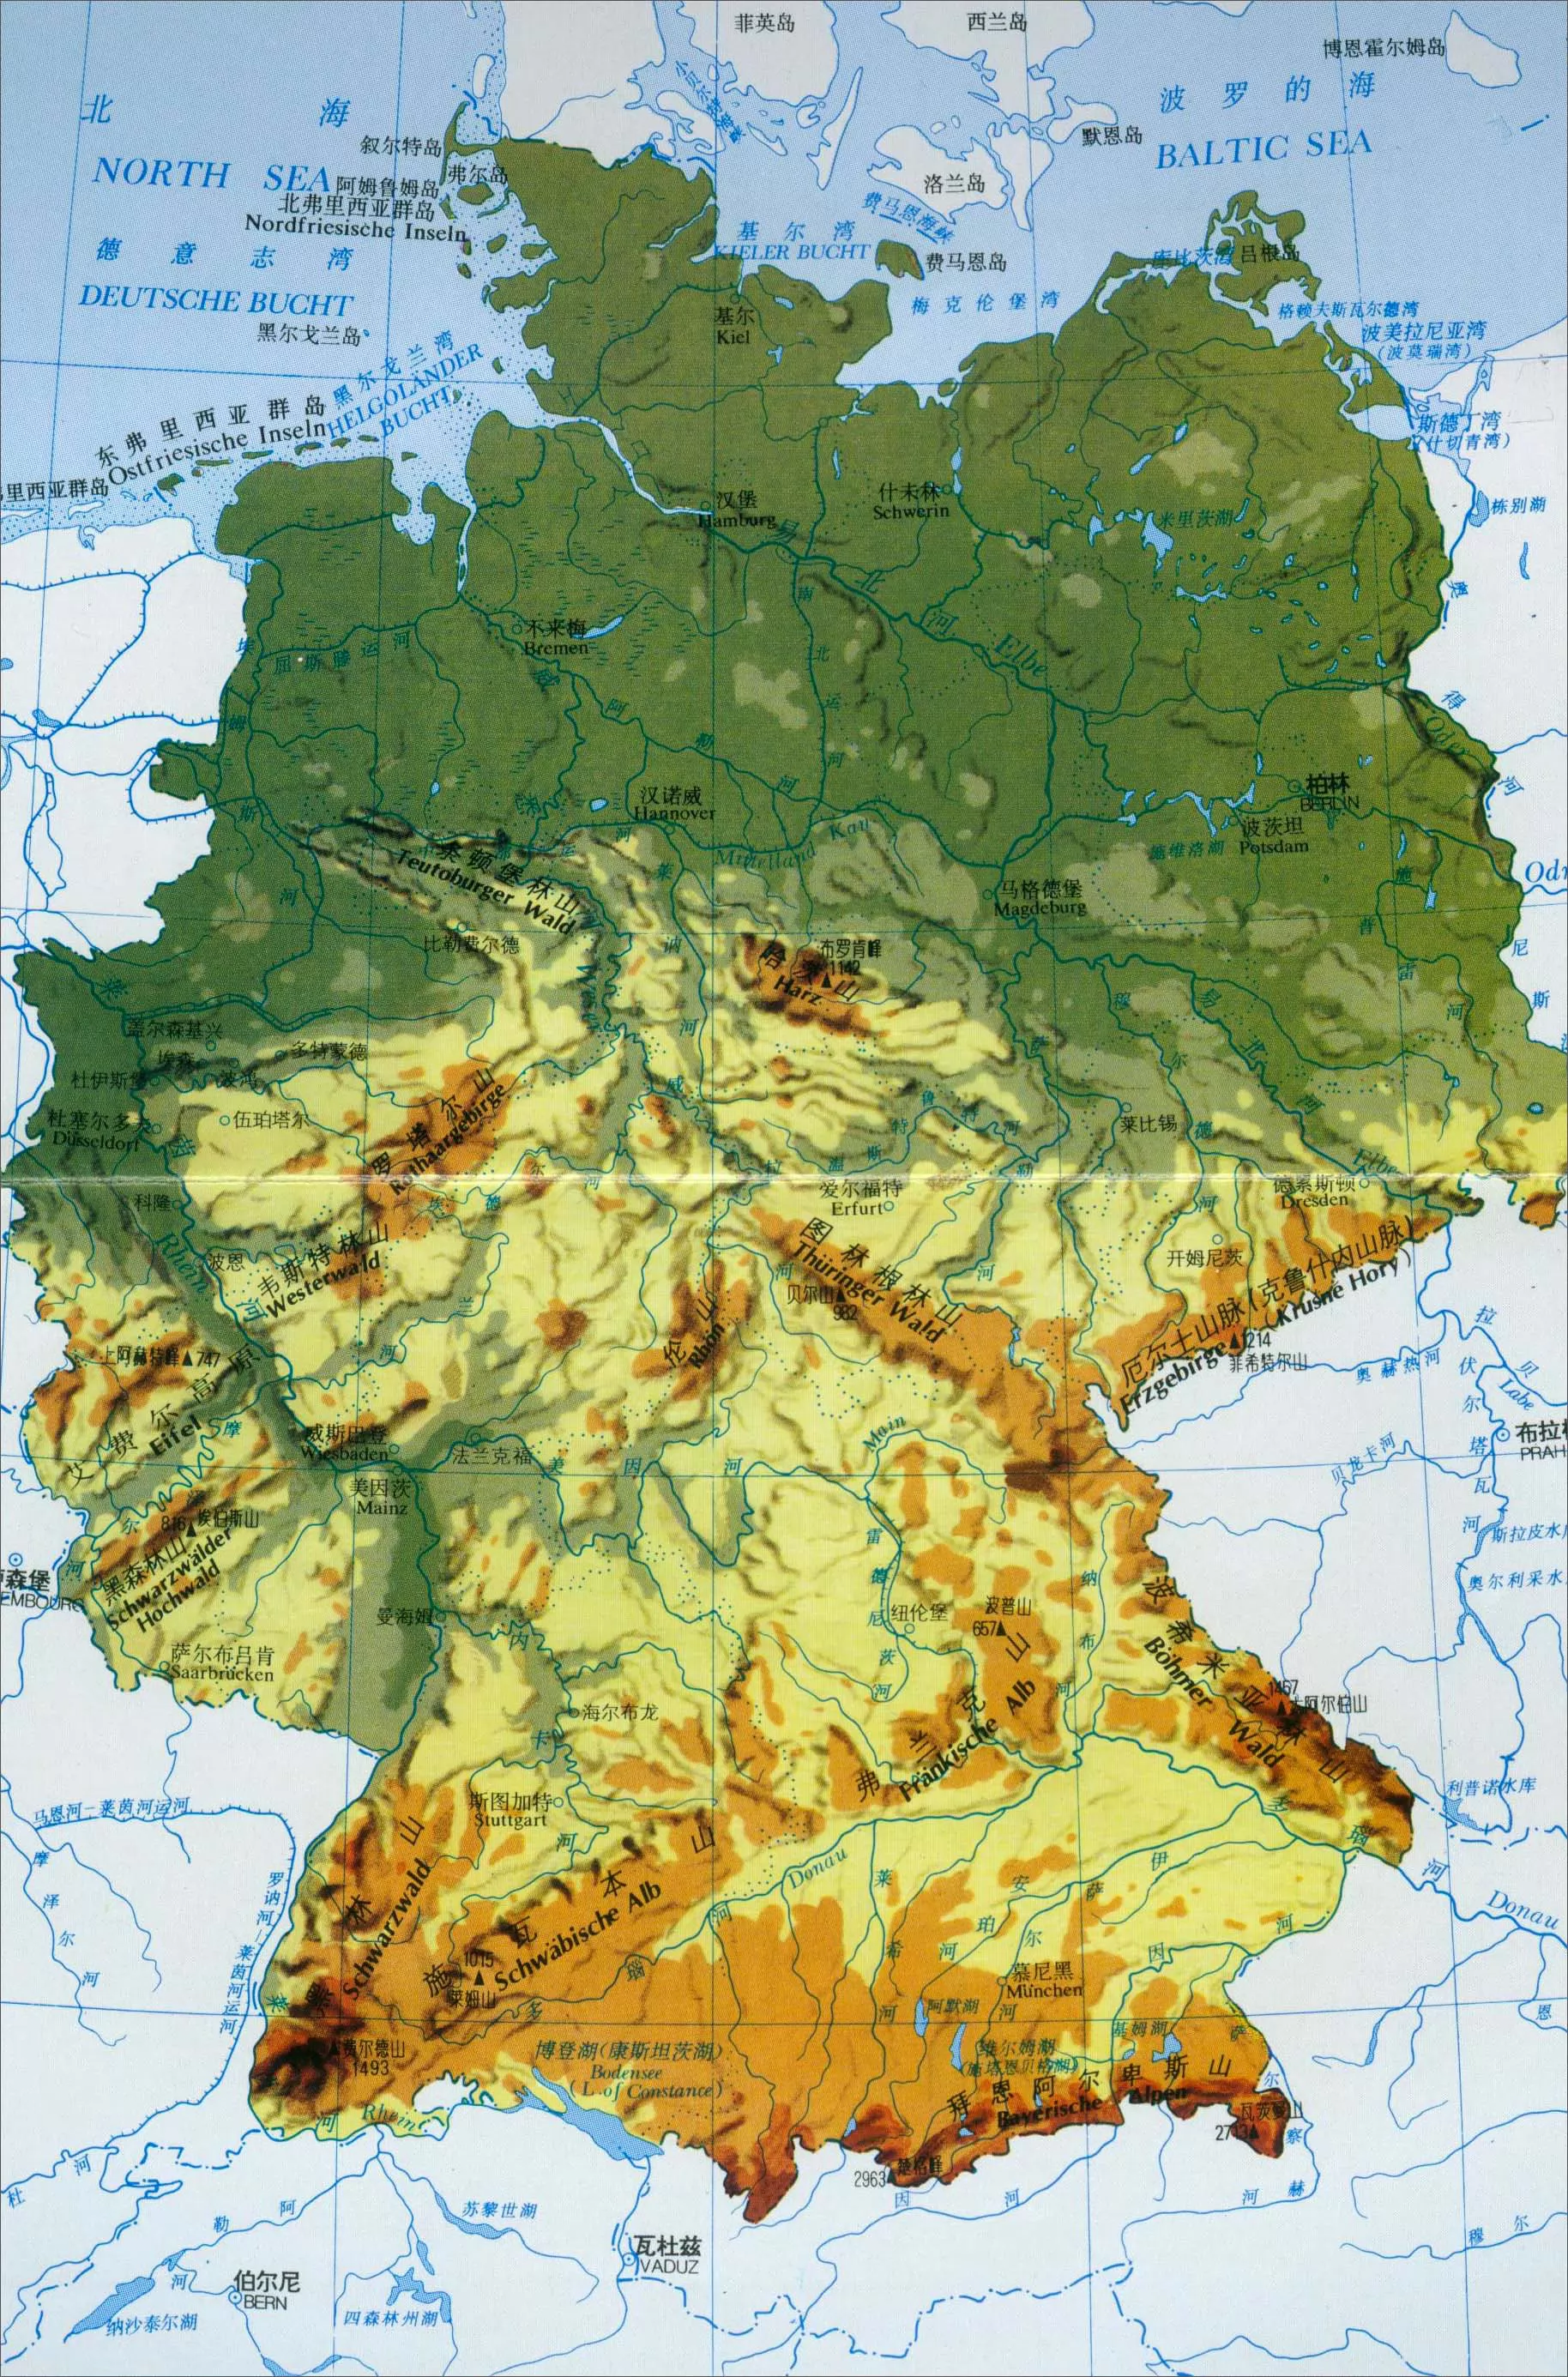 德国地图|德国地图全图高清版大图片|旅途风景图片网|www.visacits.com